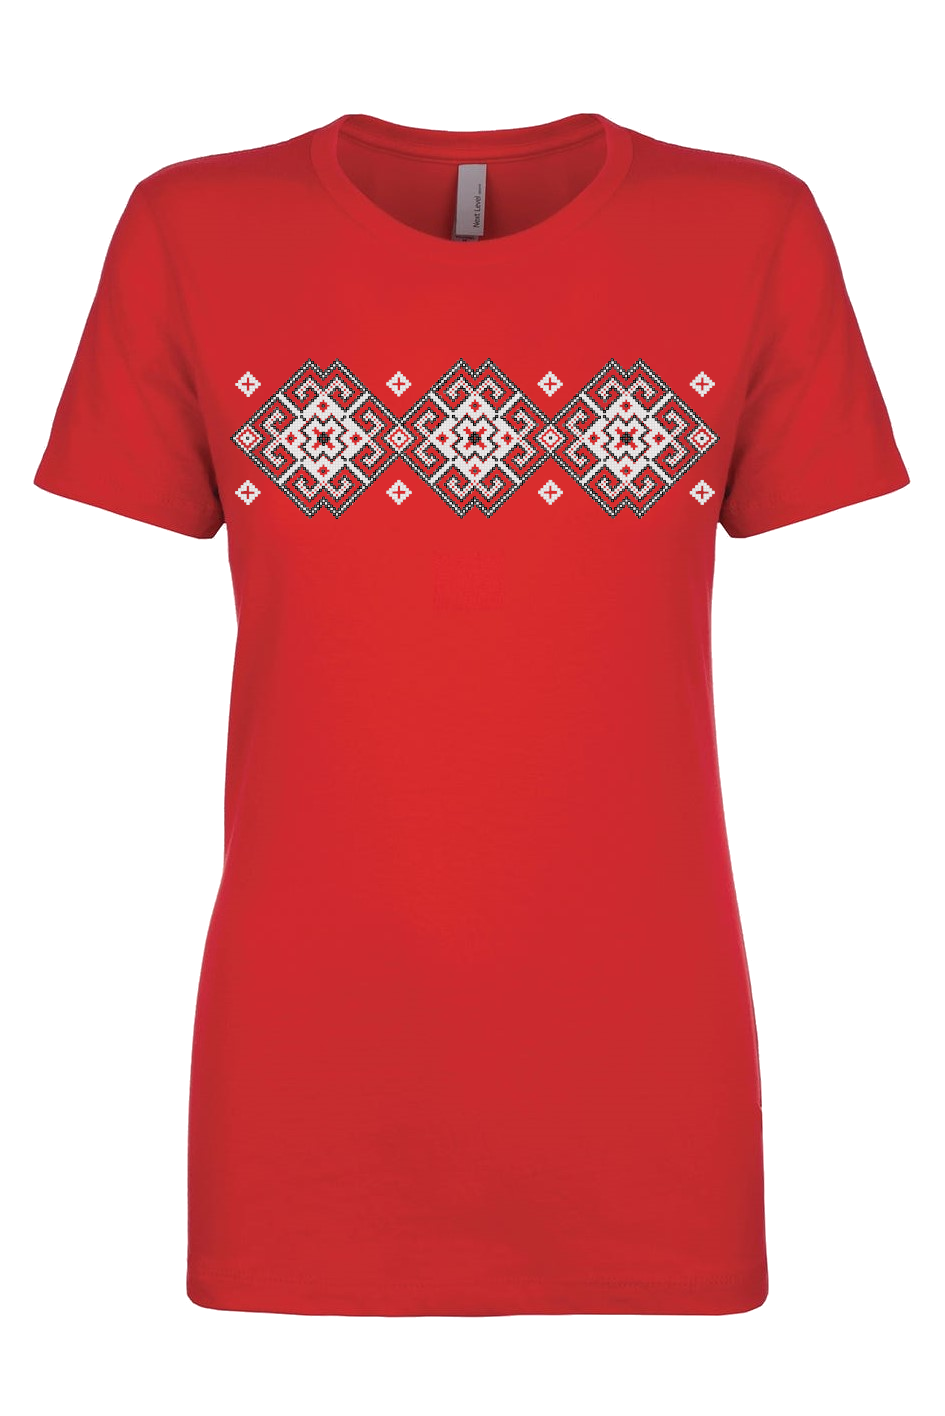 Female fit t-shirt "Vortex" red